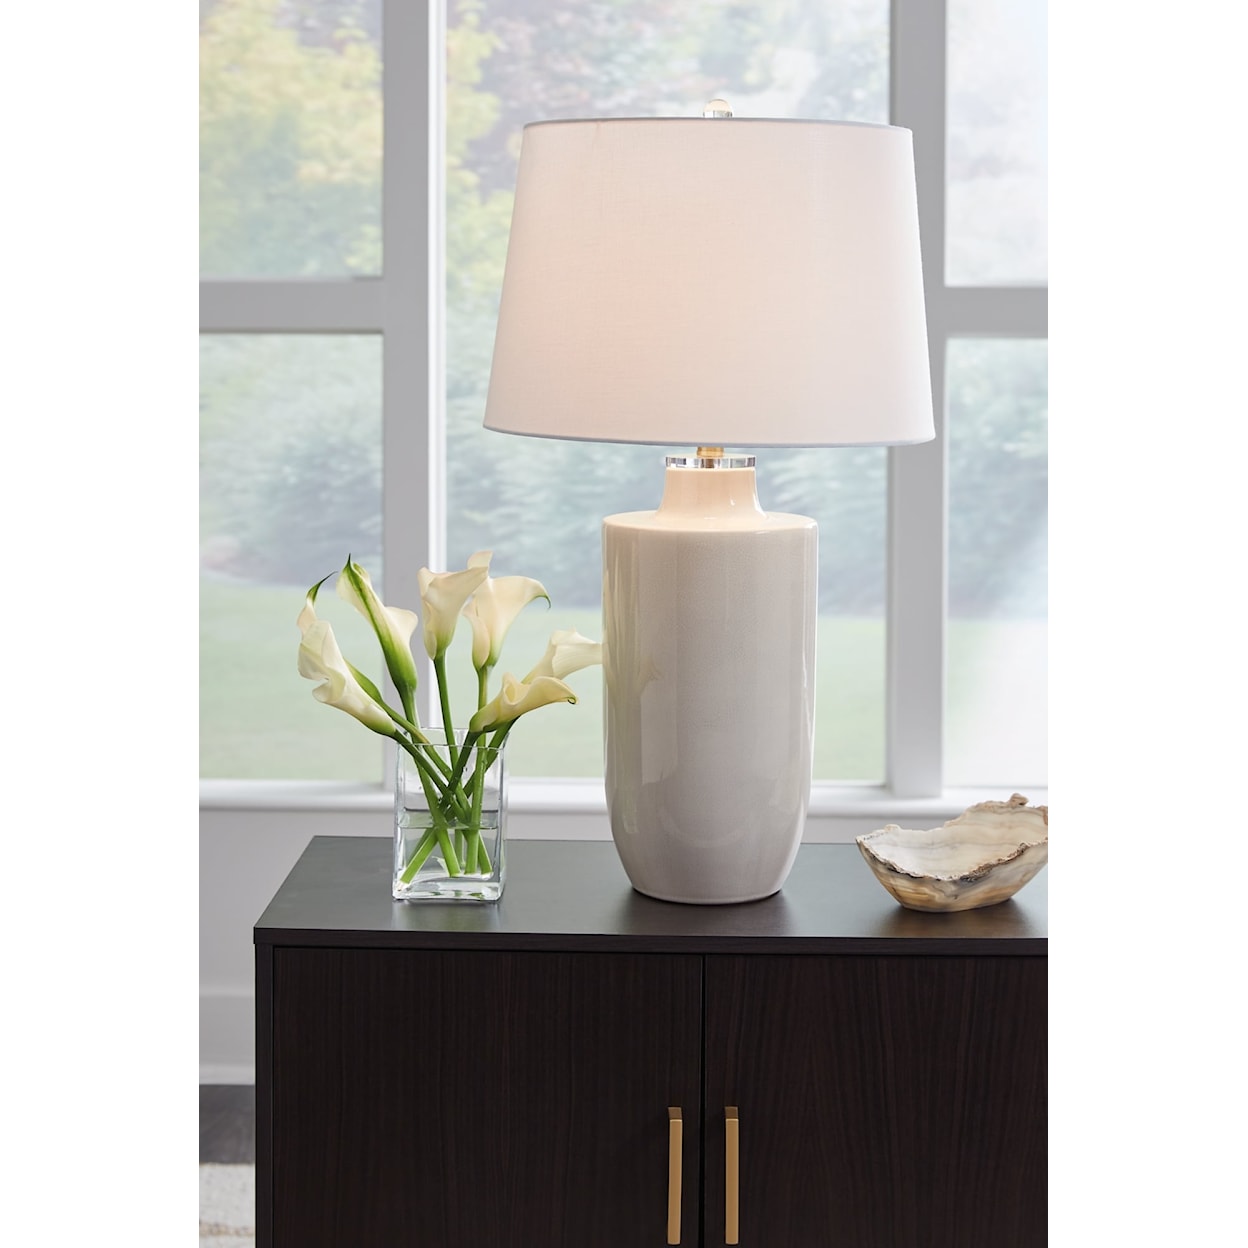 Ashley Furniture Signature Design Cylener Ceramic Table Lamp